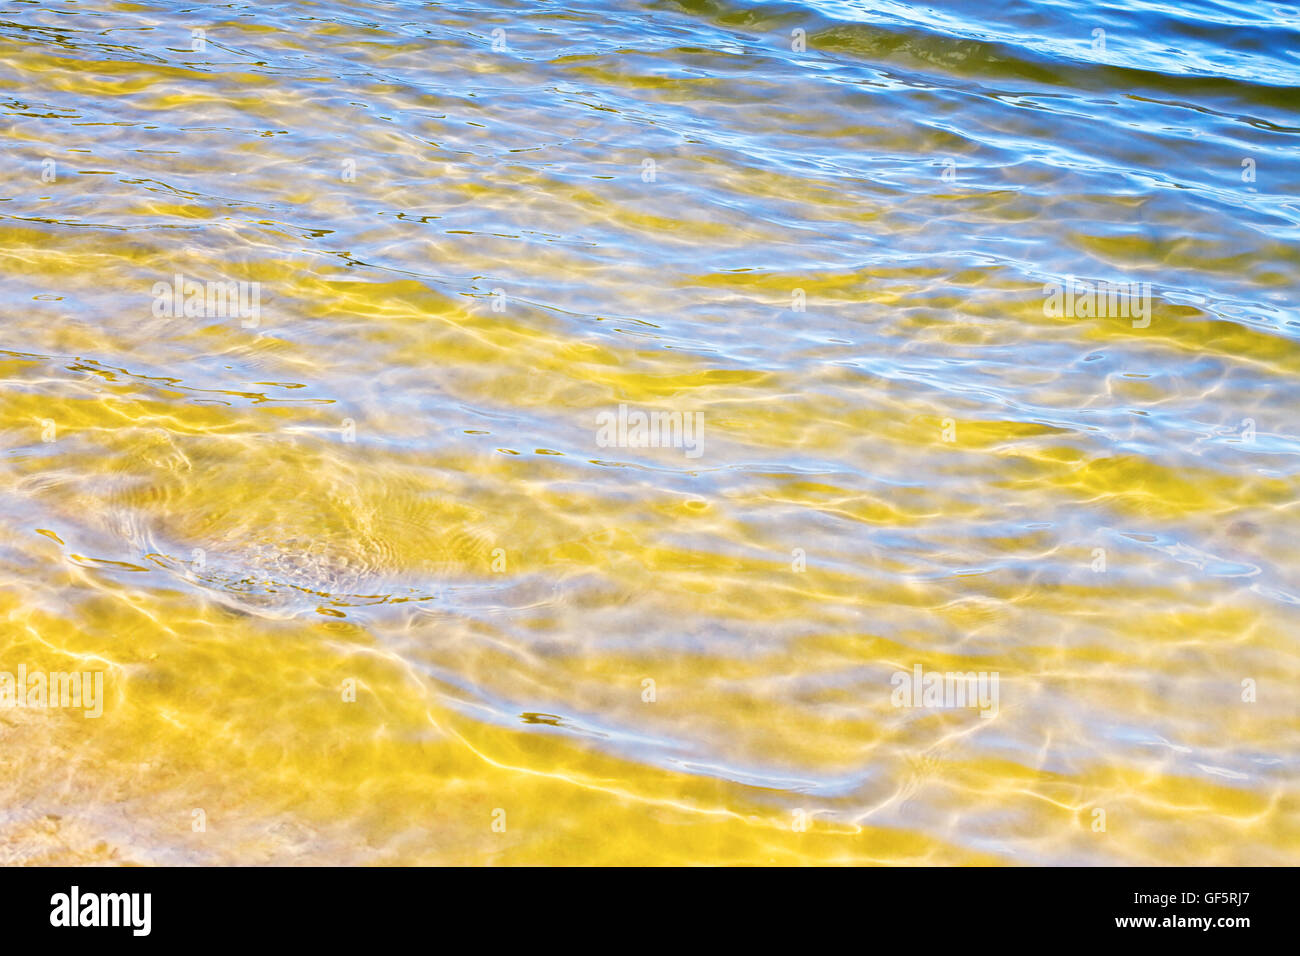 Fond de la rivière, avec du sable jaune transparent dans l'eau claire Banque D'Images